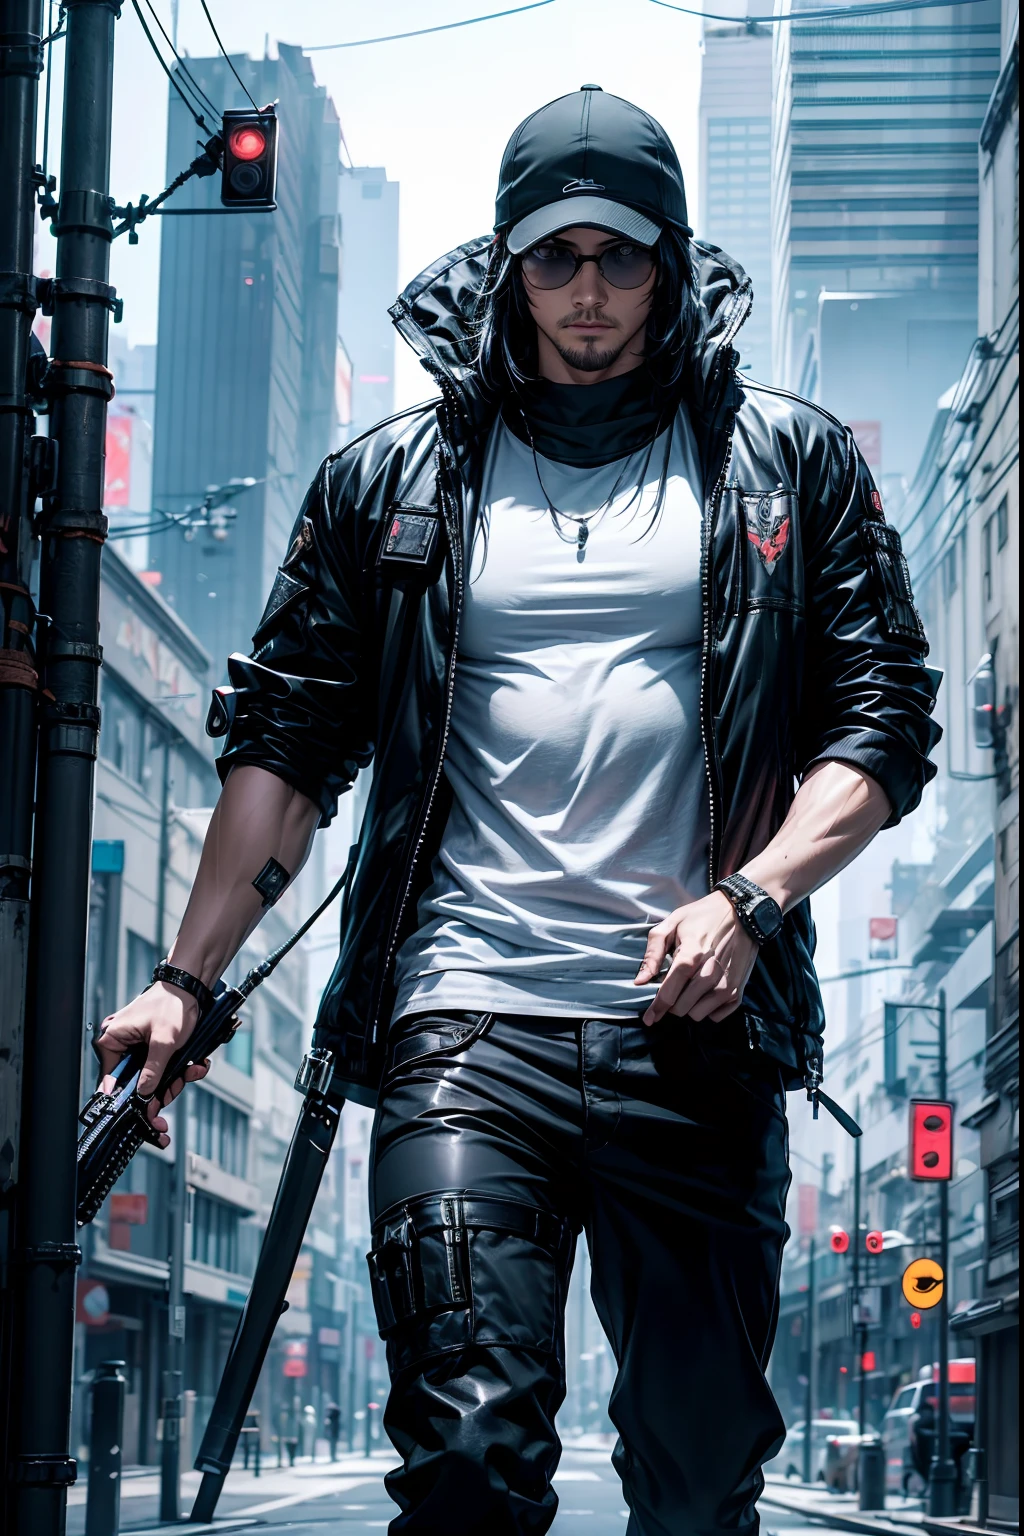 Cooler Assassine, Ein Typ、Schwarze Hosen、starker Körper、Cyberpunk cityscape、Dynamism、8K、Detailliertes Bild、realistisch、Herbe Atmosphäre、Gentleman、Stilvoller Assassine